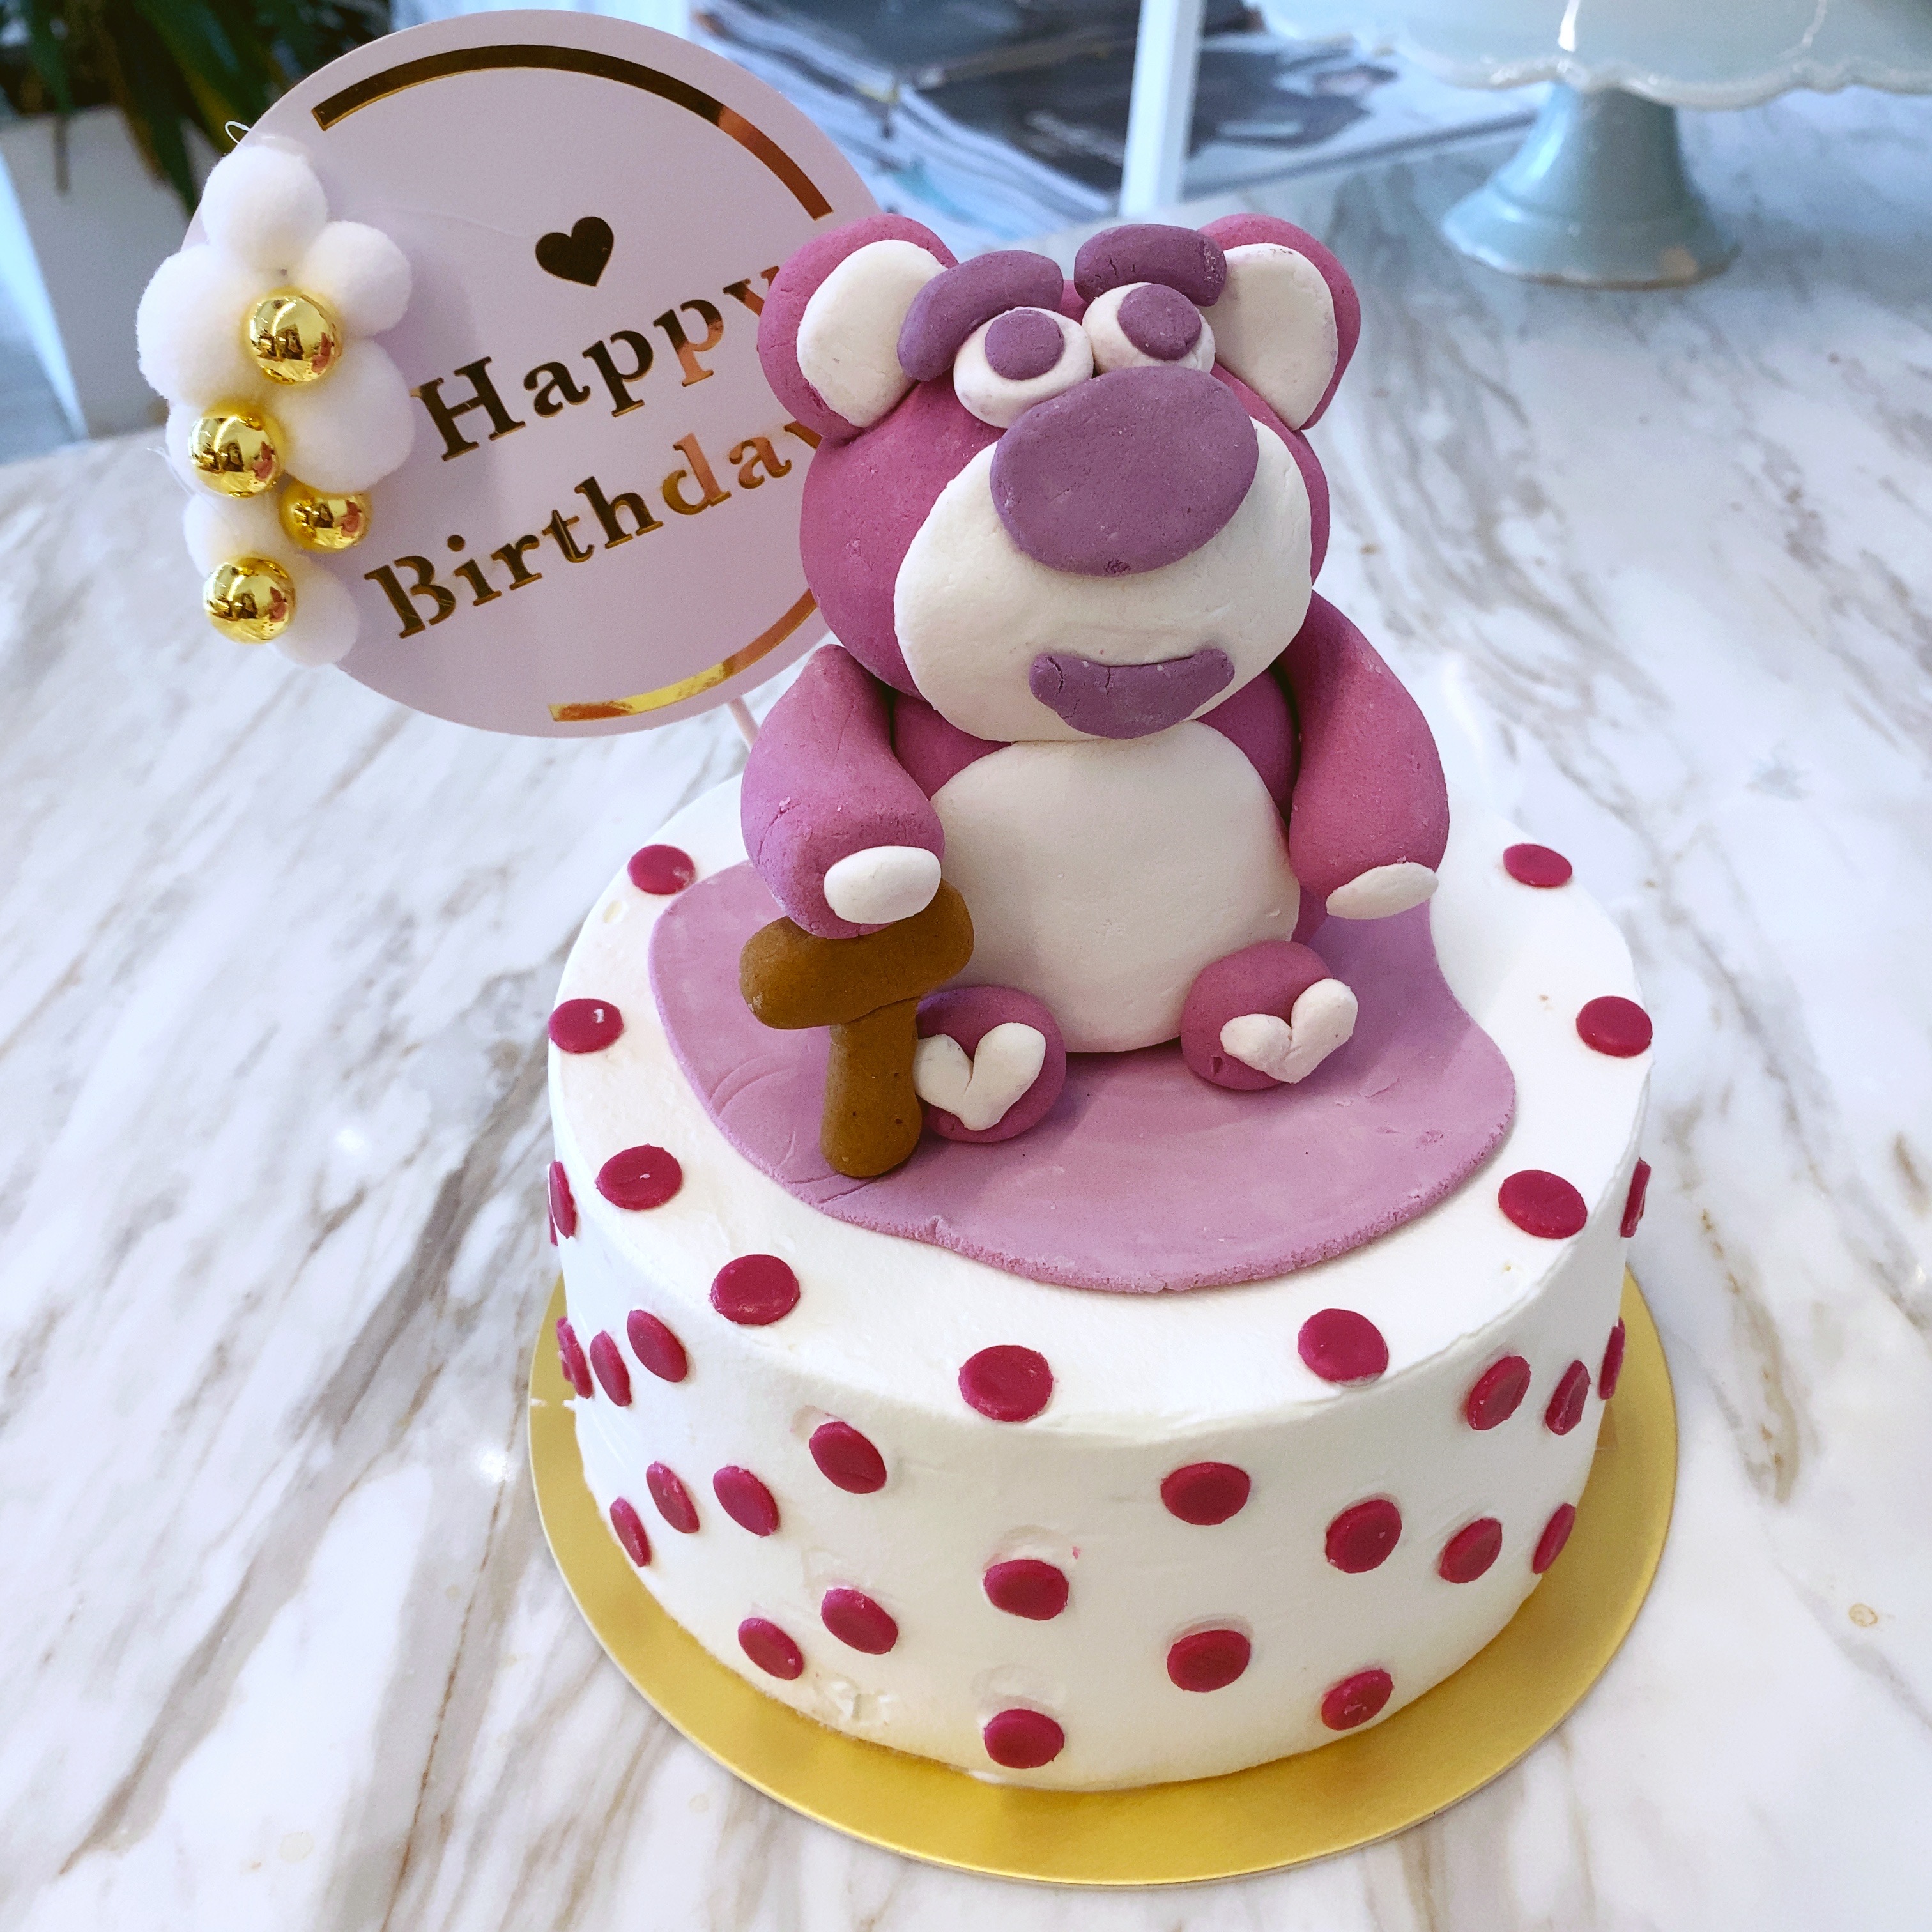 米帝欧-北京市同城配送翻糖生日蛋糕免费速递定做儿童周岁小王子